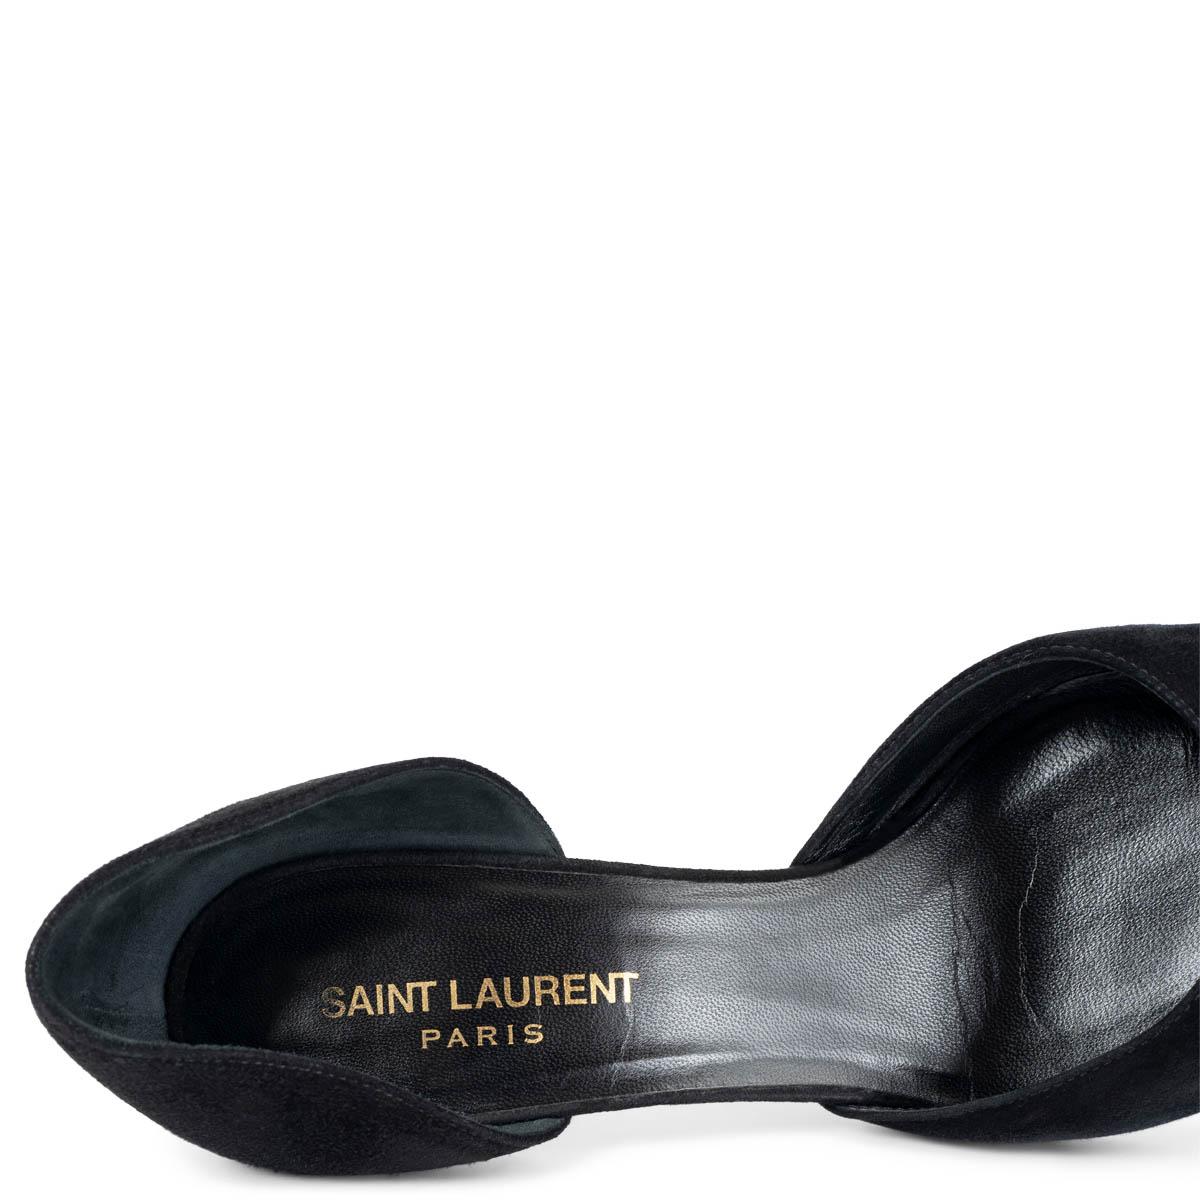 SAINT LAURENT black suede PARIS D'ORSAY Pumps Shoes 37.5 For Sale 1